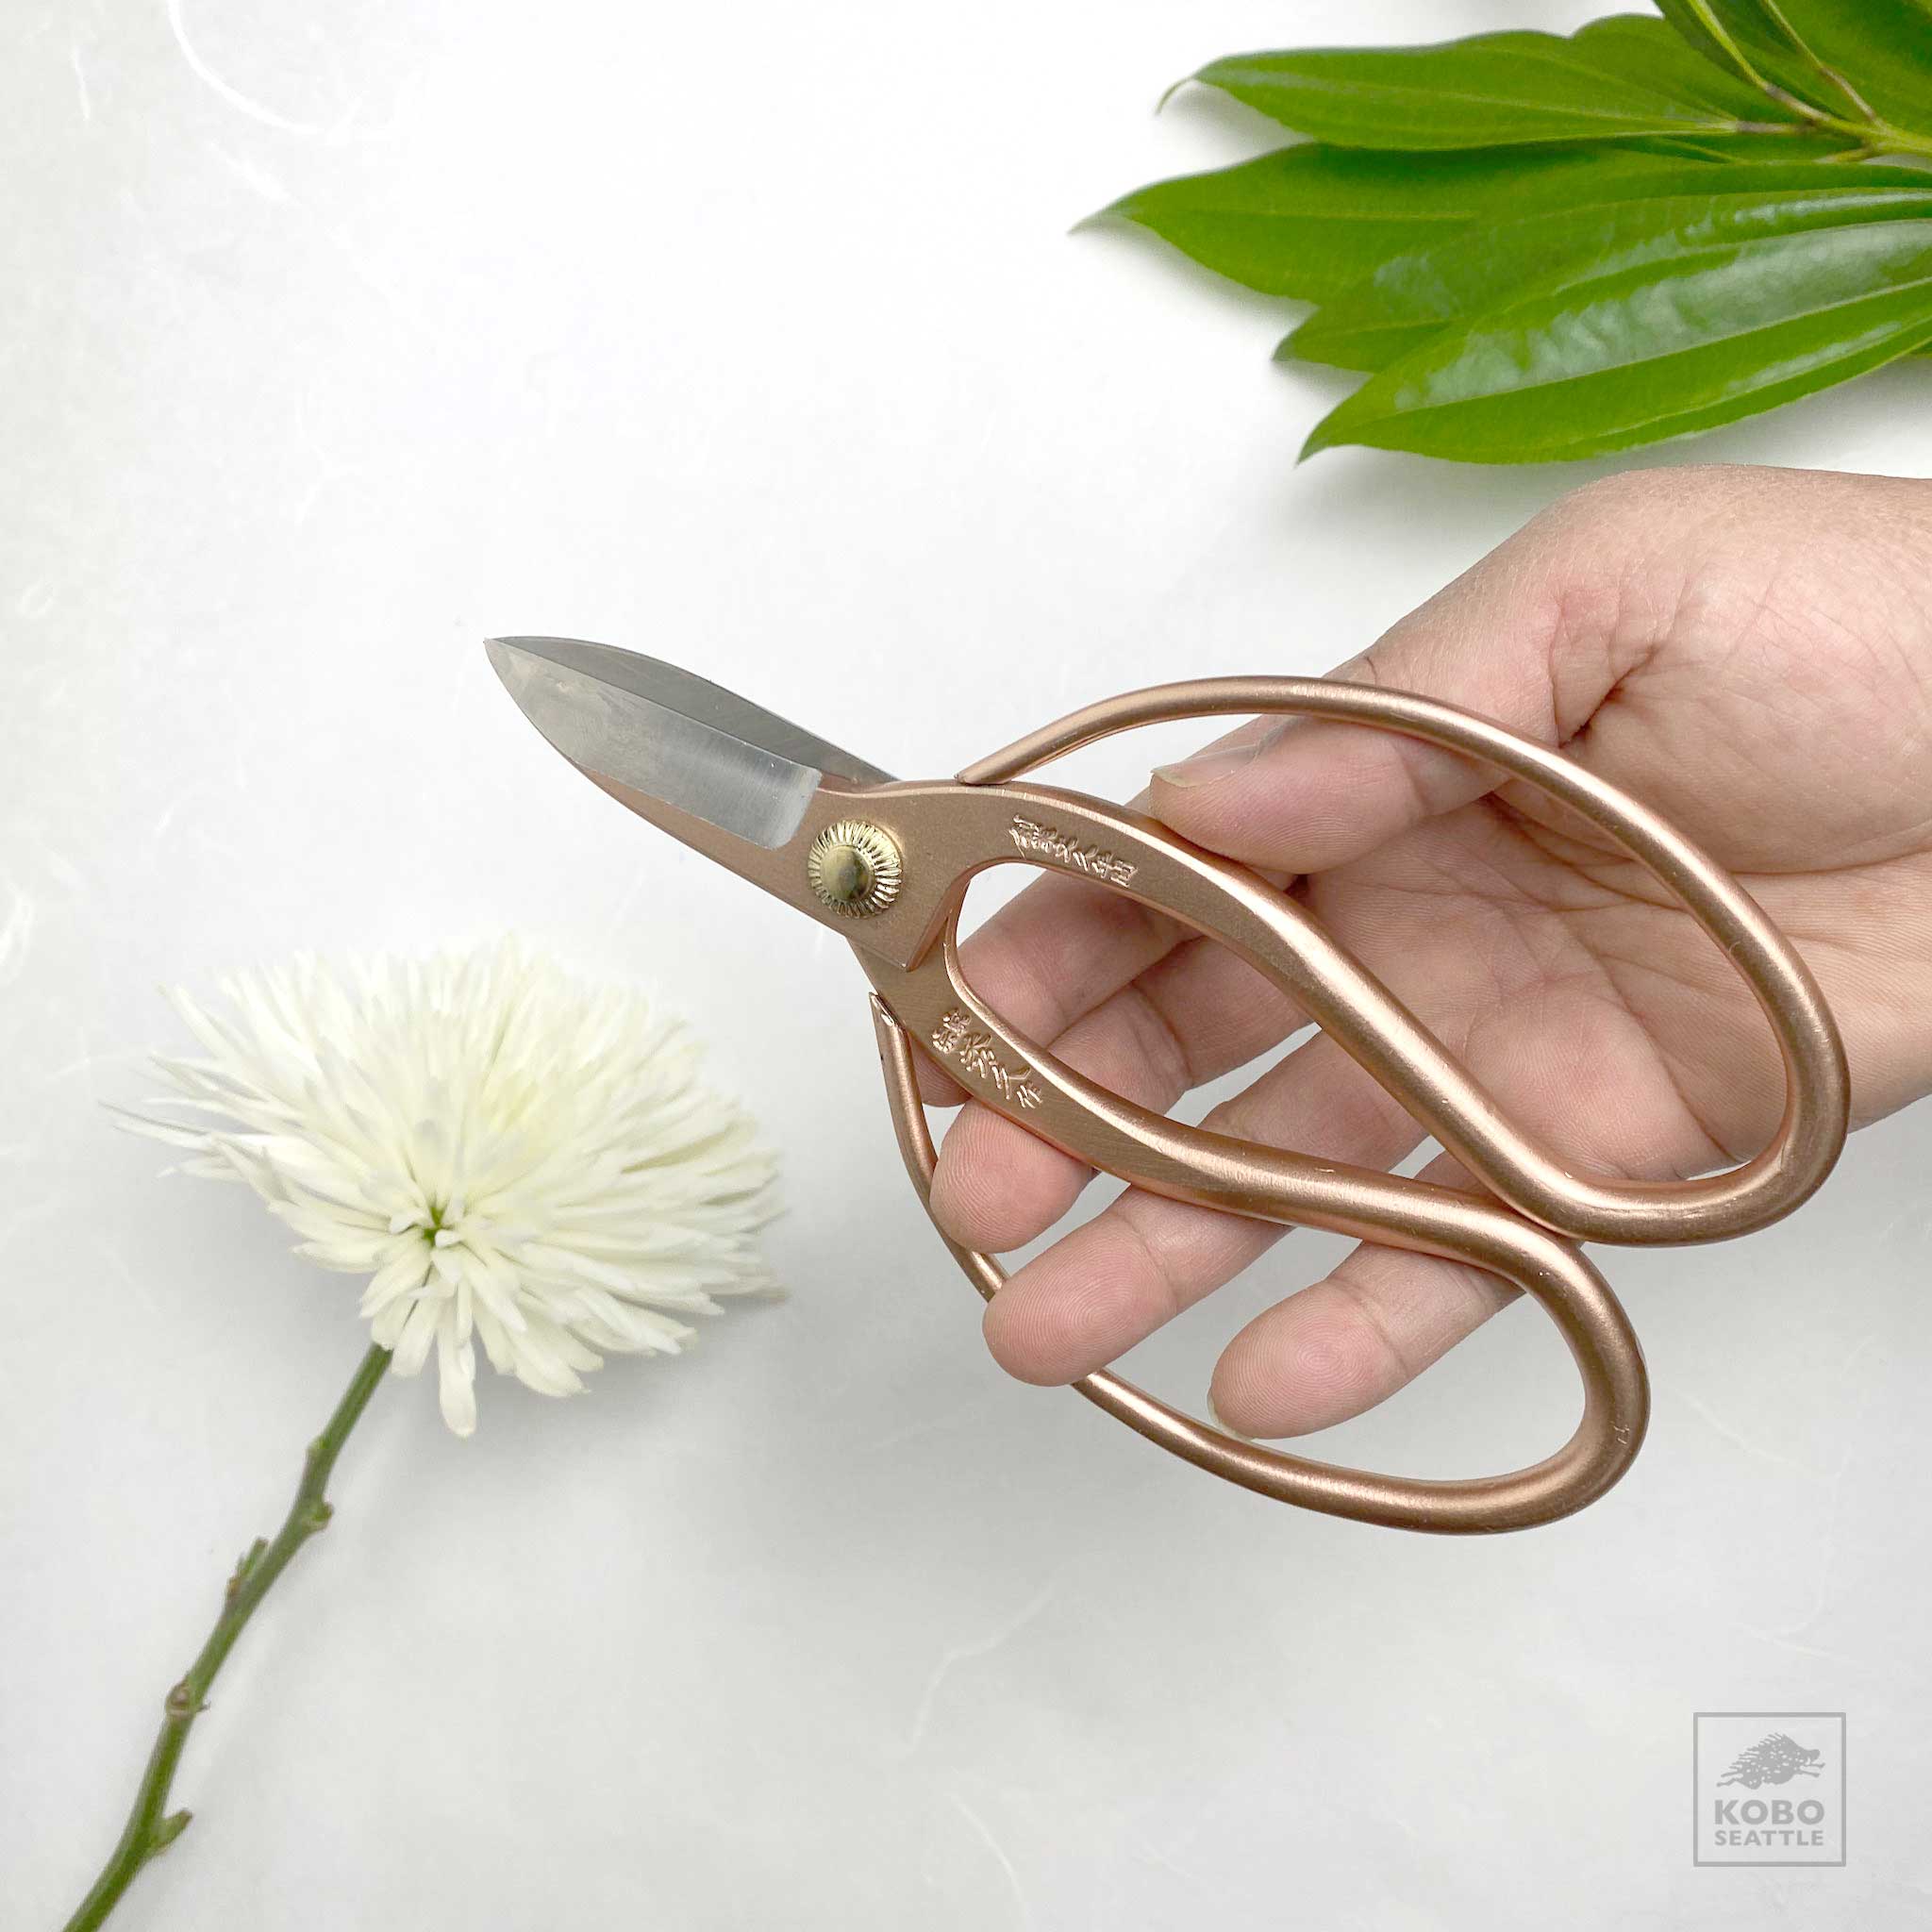 Garden Scissors, Rose Gold tone - KoboSeattle